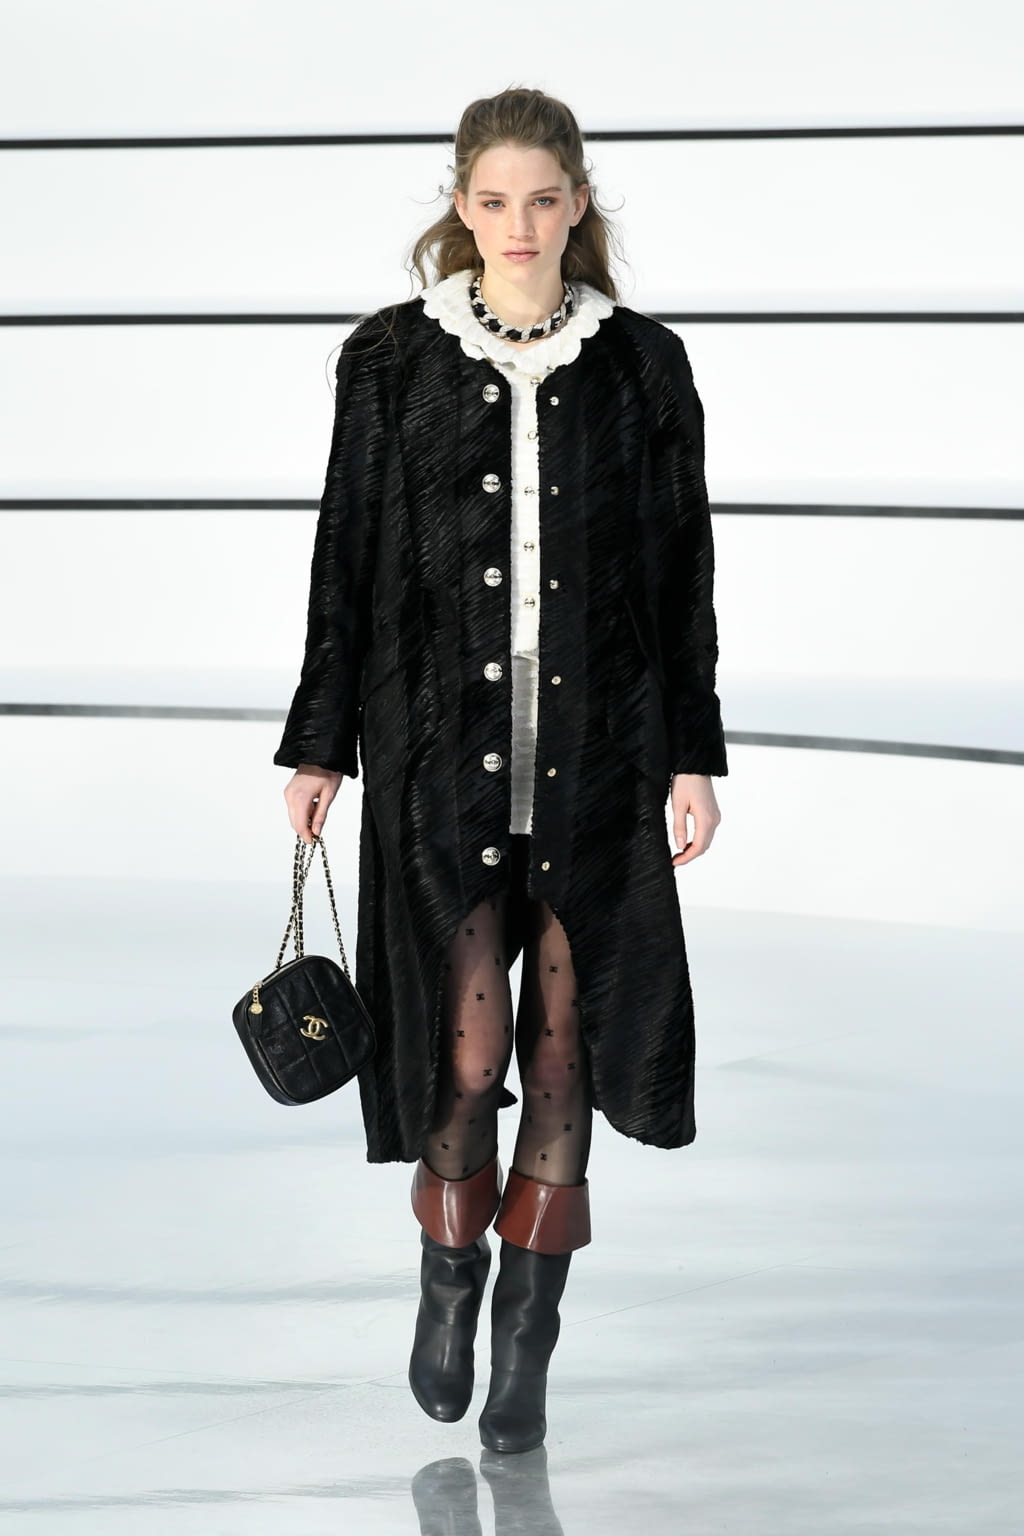 Chanel FW20 womenswear #4 - The Fashion Search Engine - TAGWALK